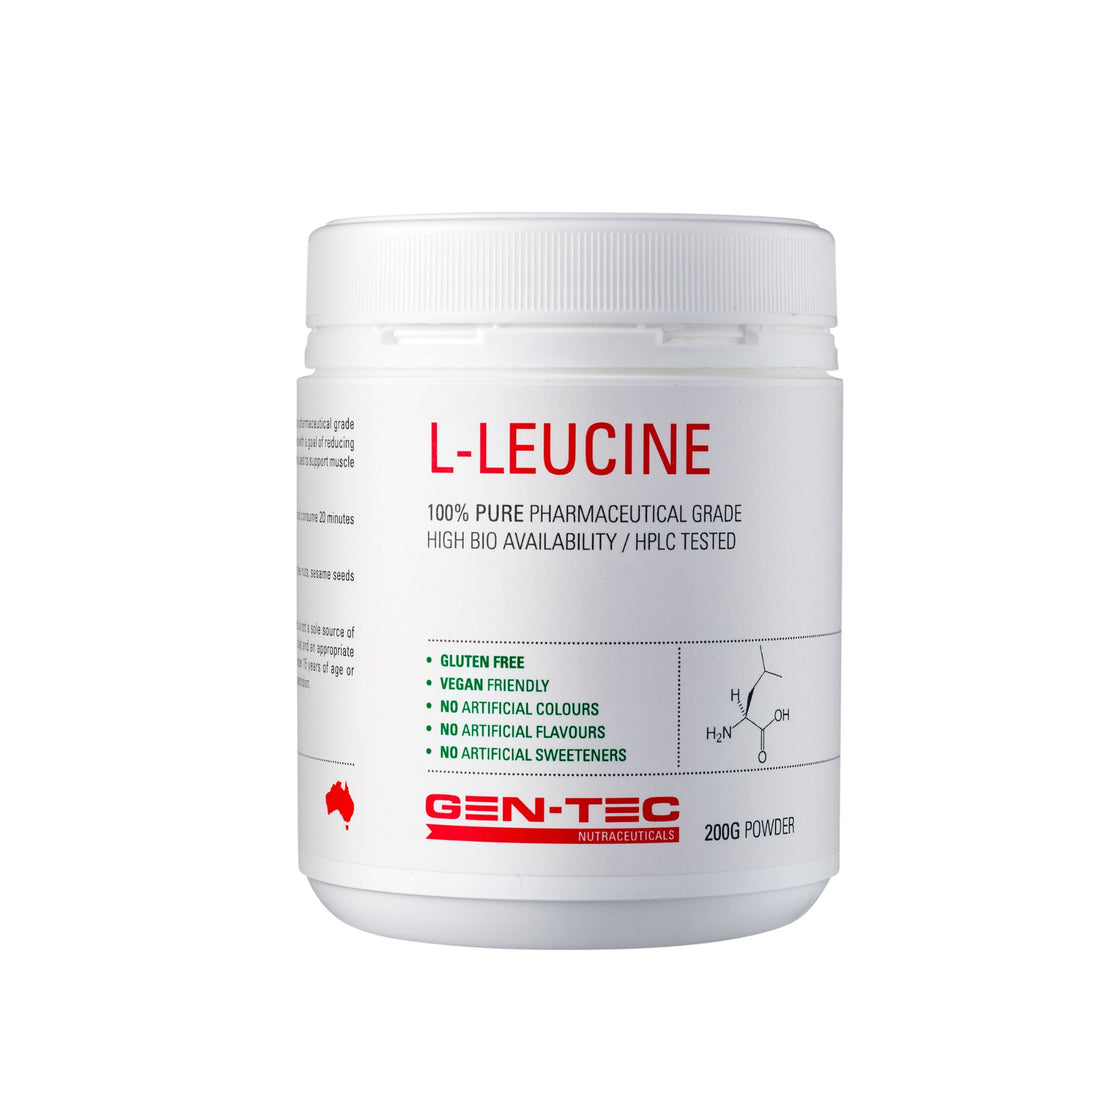 Gentec L-Leucine Nutraceuticals